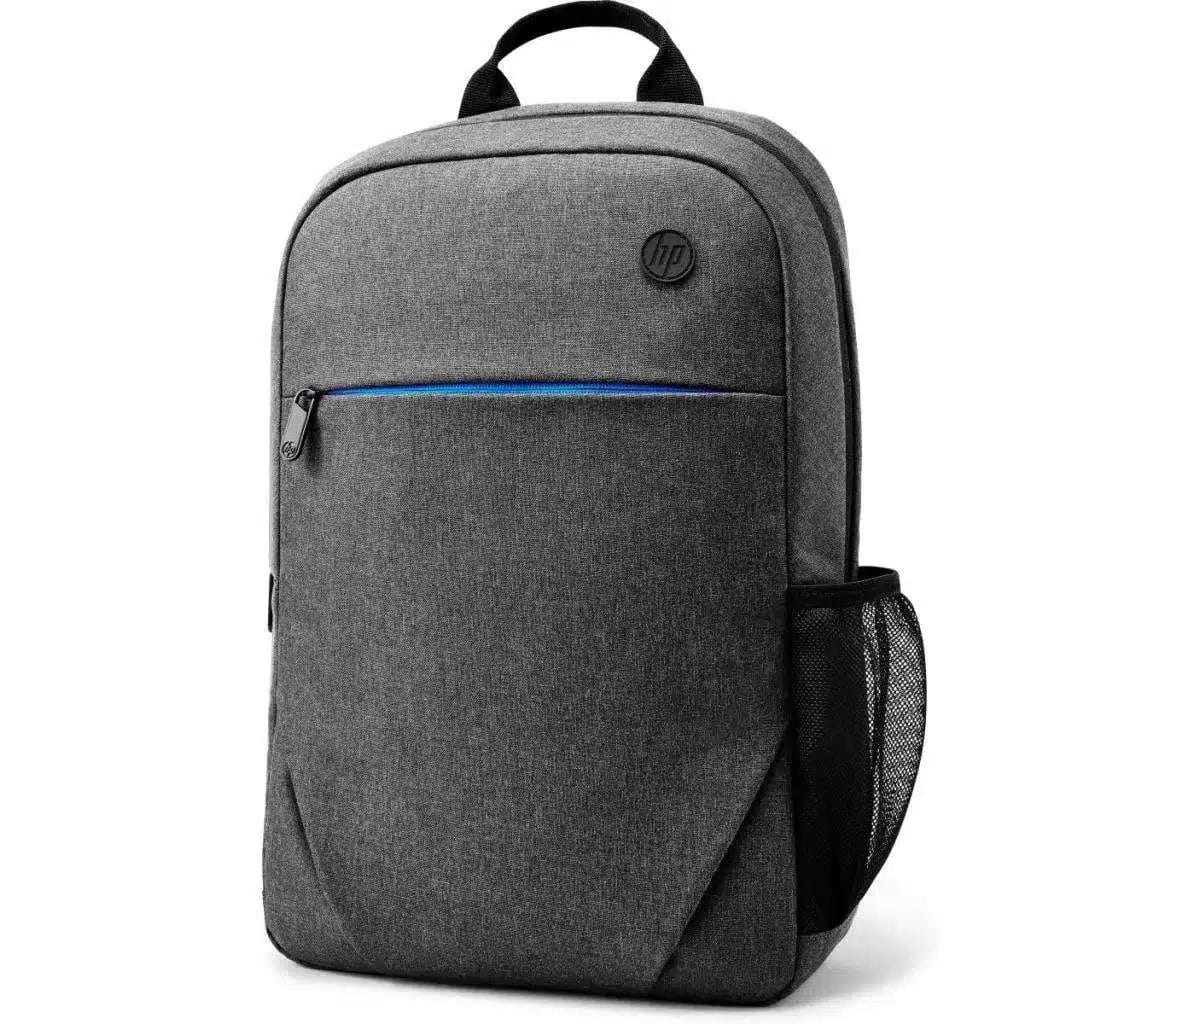 HP-Prelude-Backpack-Black-15.6-1E7D6AA.webp